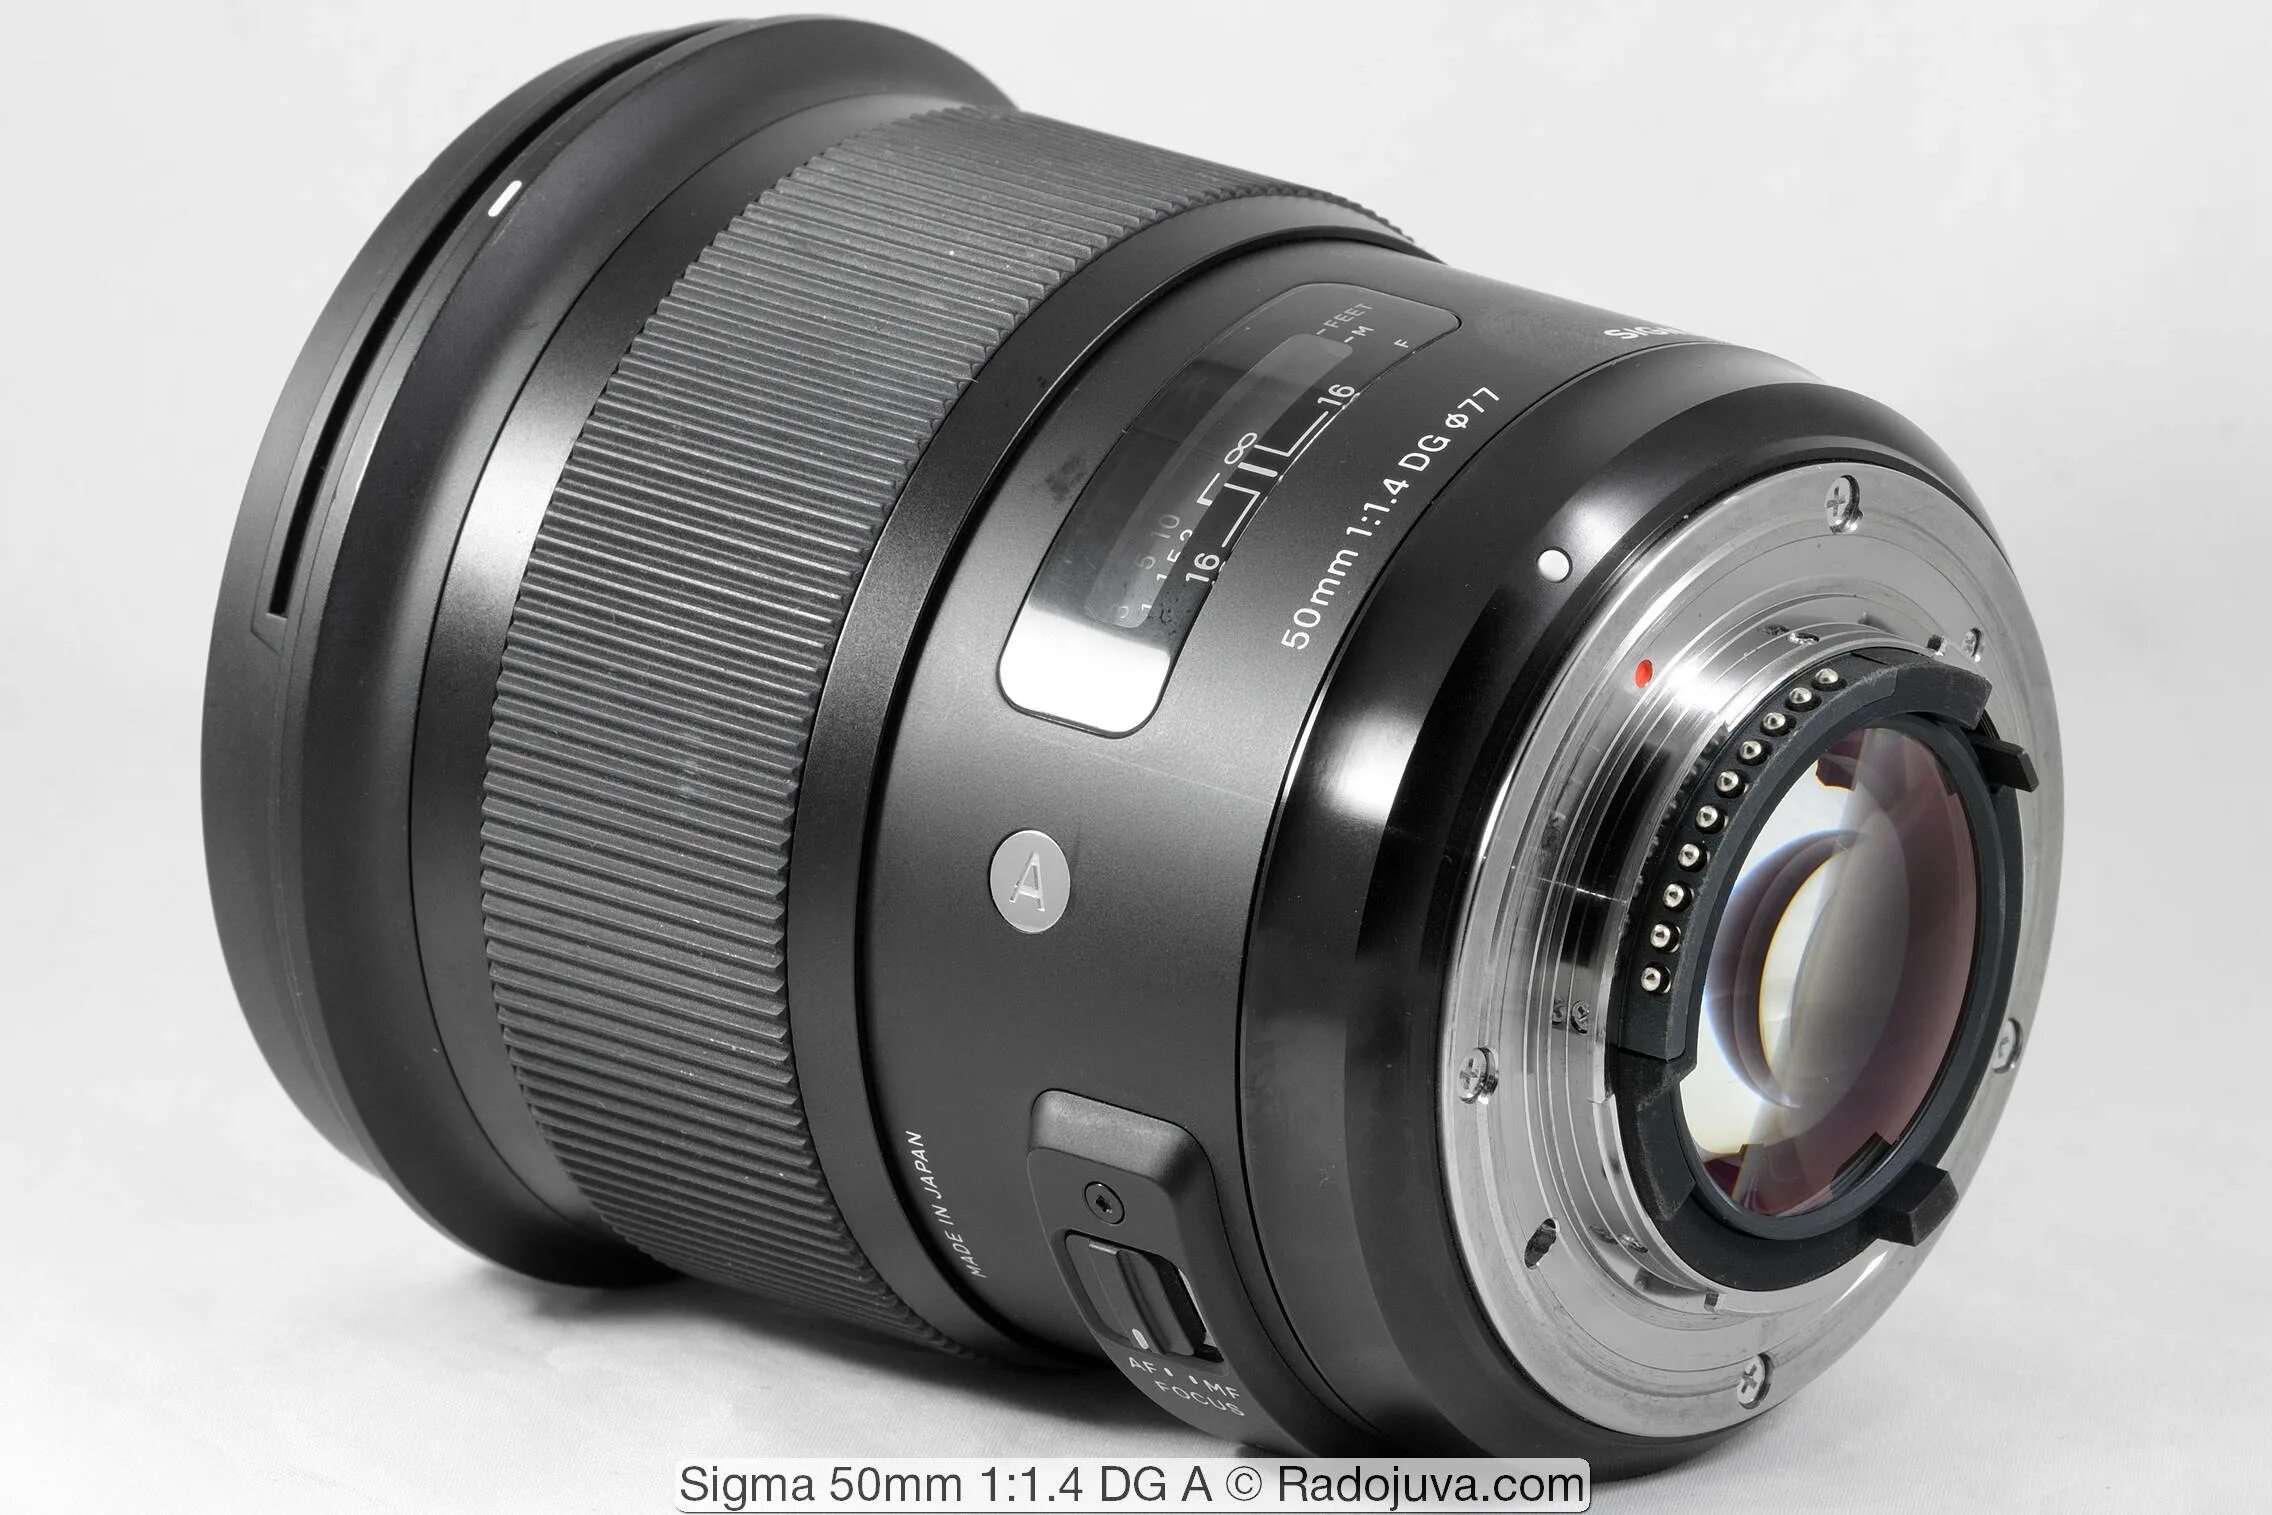 Sigma 50mm 1.4 dg. Sigma 50mm 1.4 Art. Sigma 50mm 1.4 Art Nikon. Sigma 50mm f1.4 ex DG HSM Canon. Sigma 50 HSM DG.